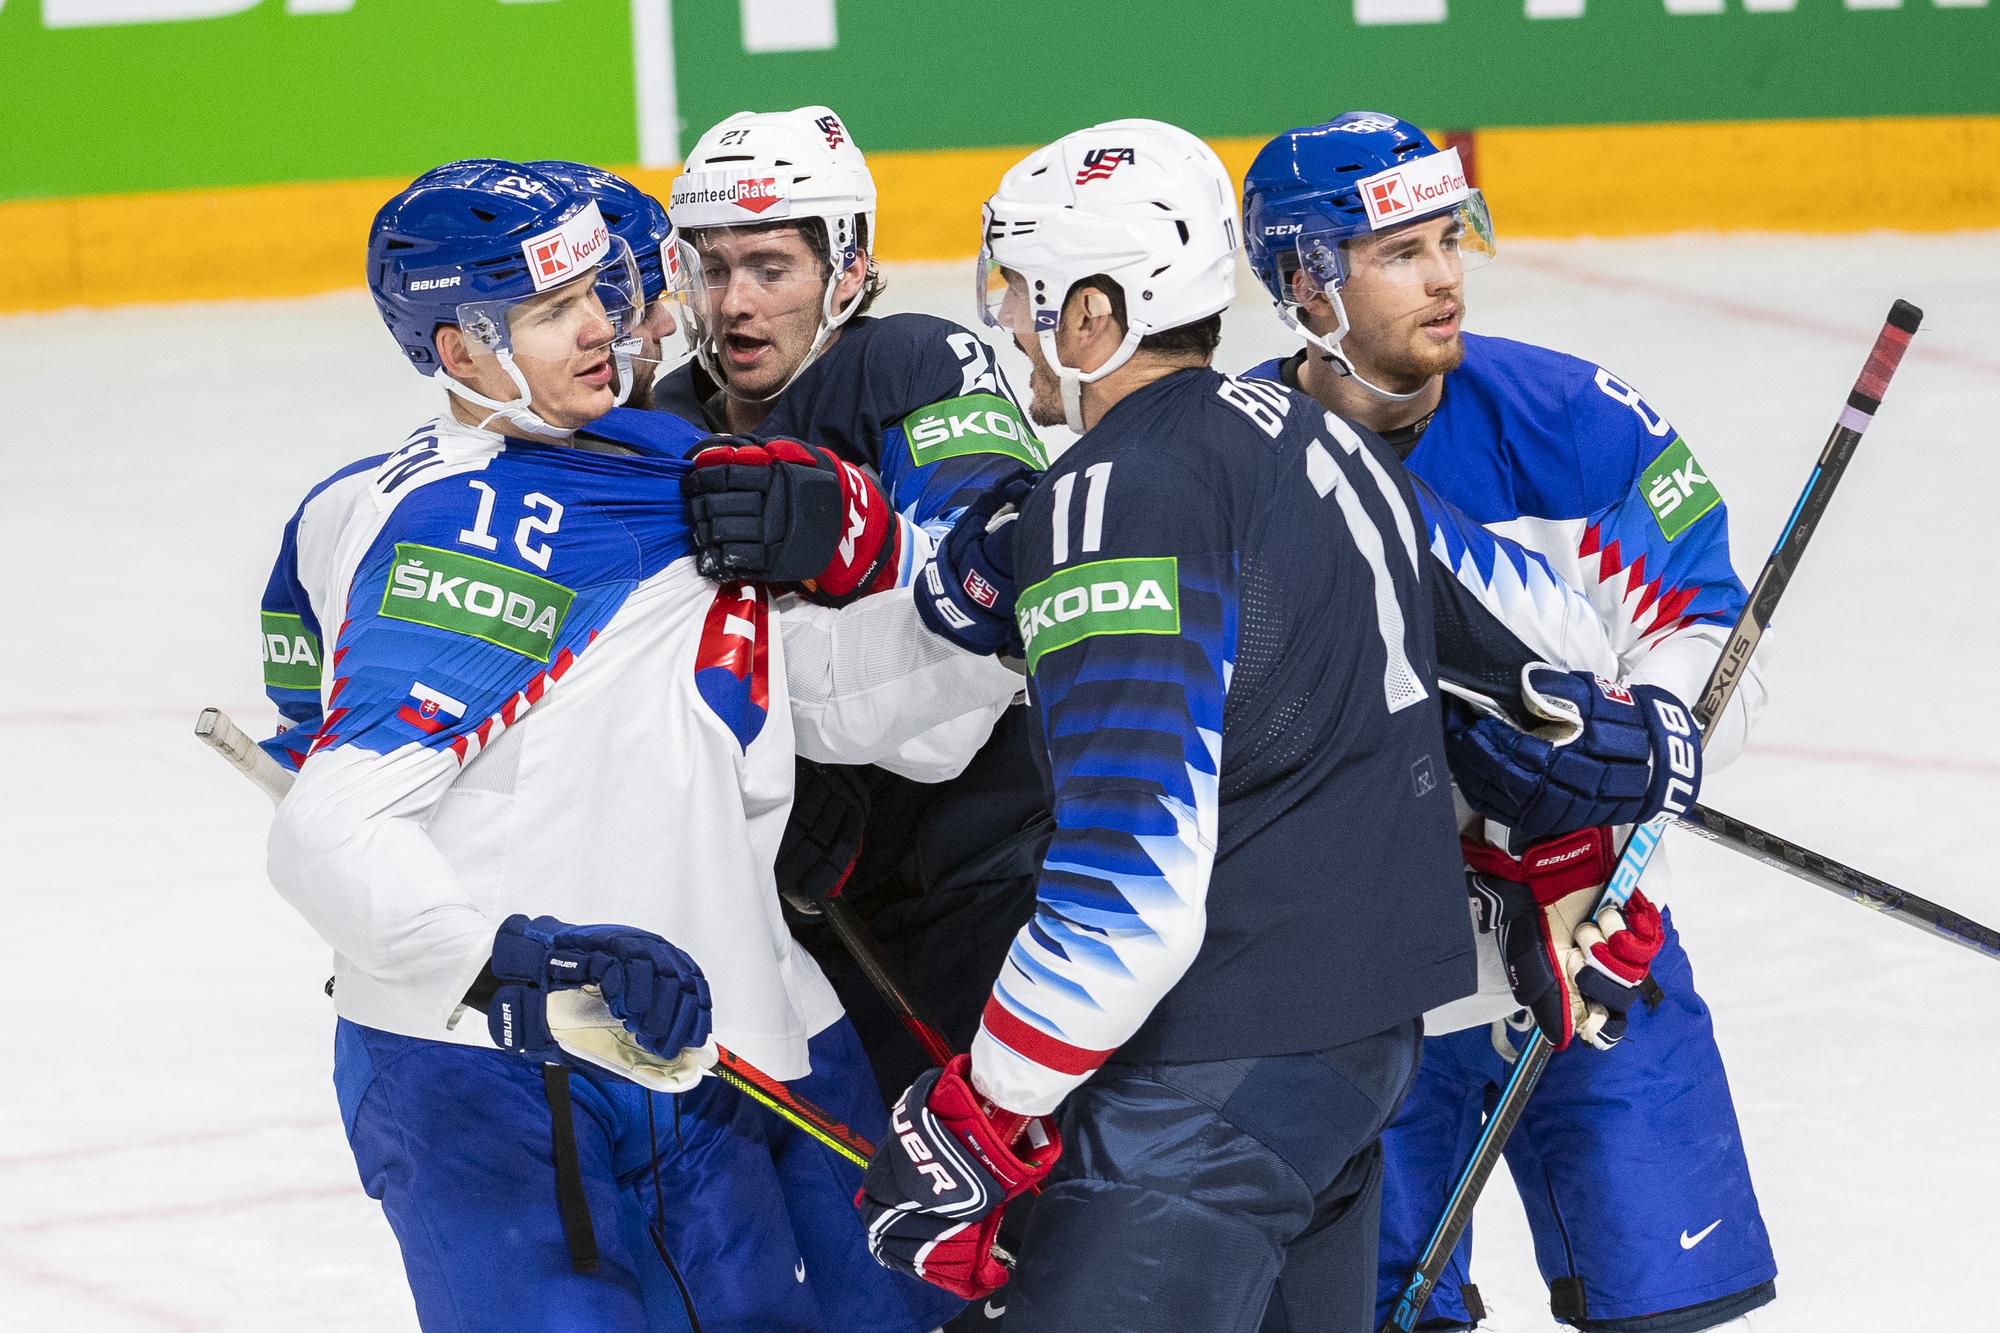 MS v hokeji 2021: USA - Slovensko: zľava Miloš Kelemen, Mário Grman (obaja Slovensko), Kevin Rooney, Brian Boyle (obaja USA) a Kristián Pospíšil (Slovensko)